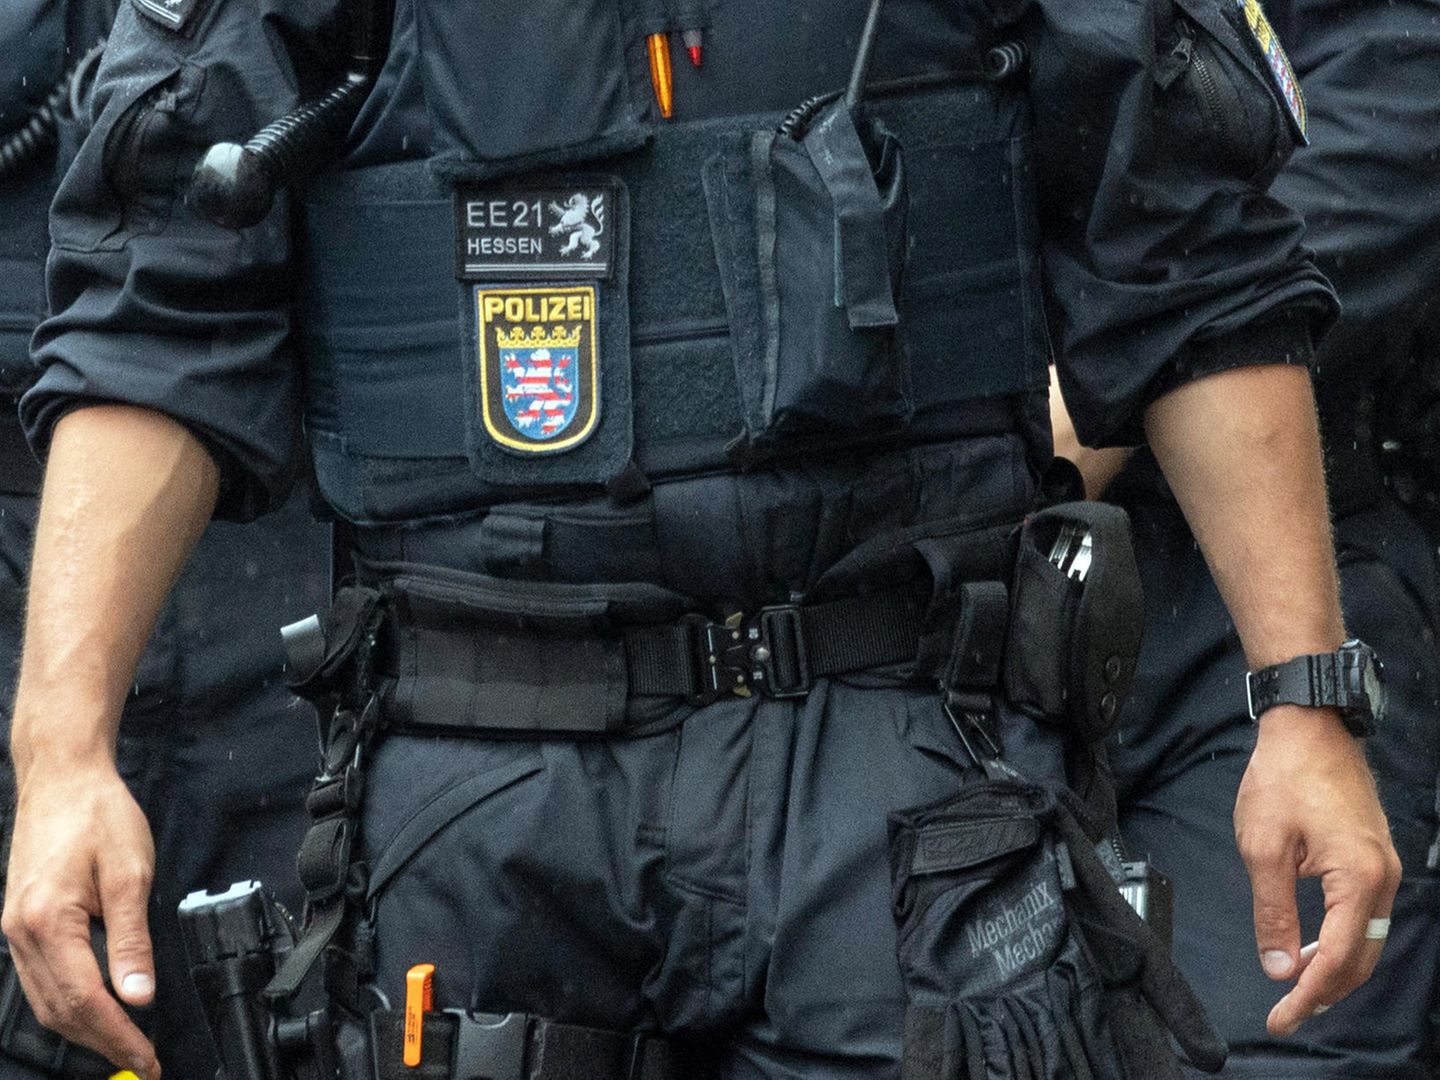 Polizei Hessen - Wie wird eigentlich darüber entschieden, wo geblitzt wird?